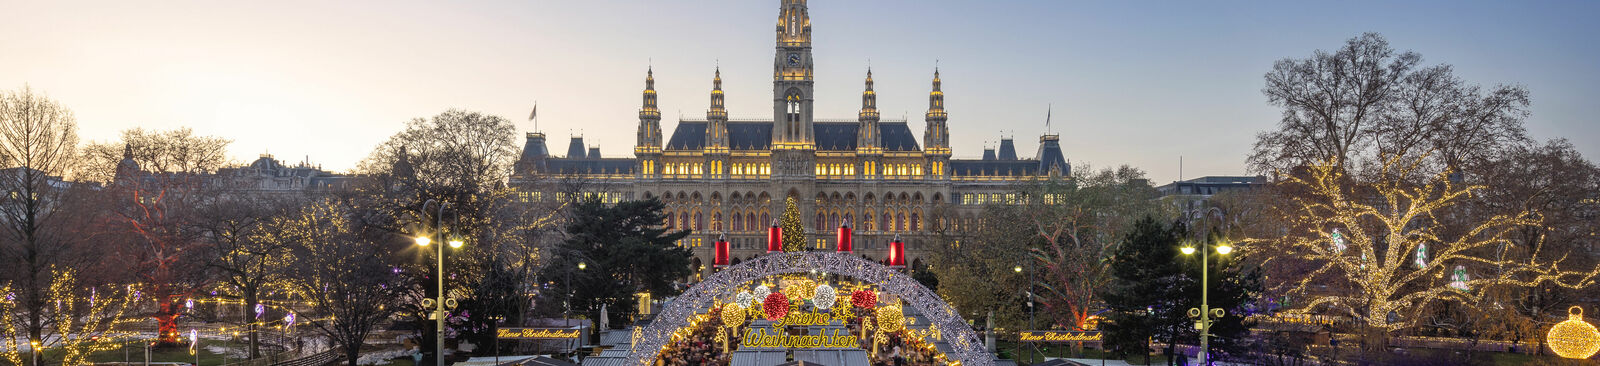 Wiener Weihnachtstraum auf dem Rathausplatz